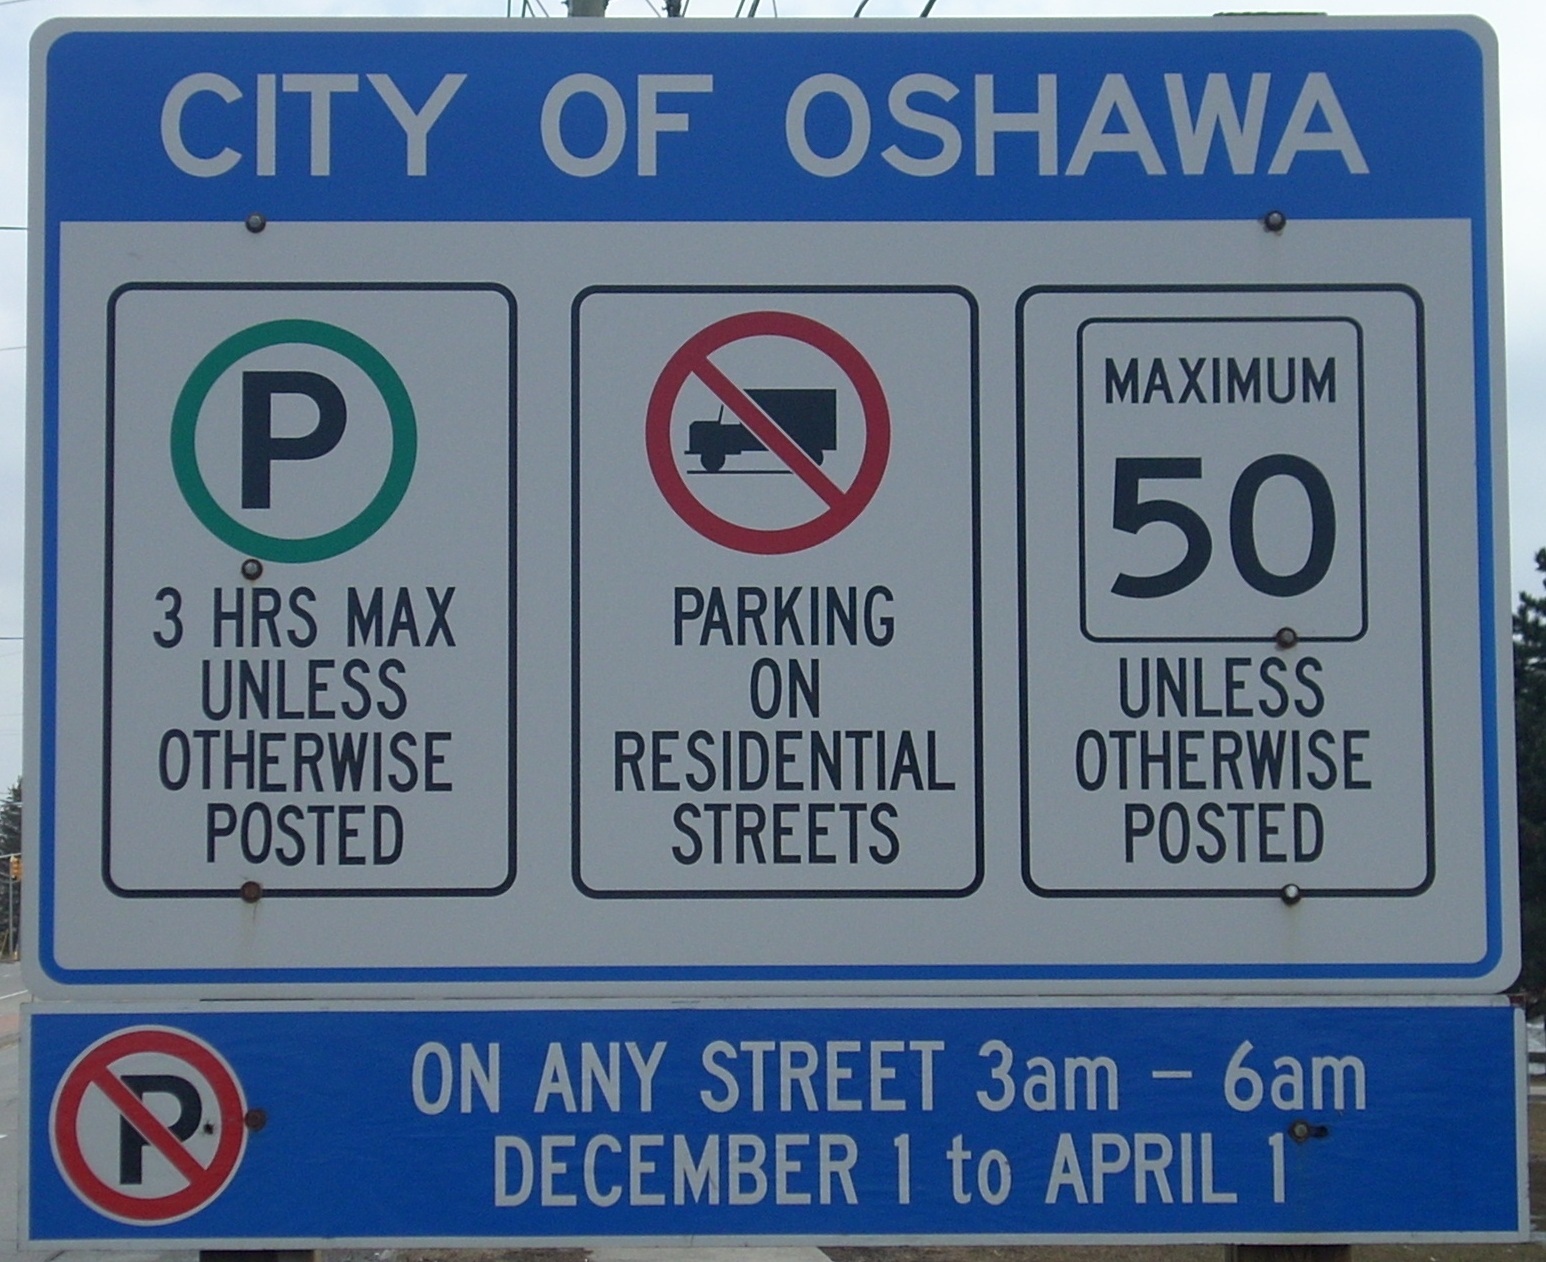 Parking sign showing regulations